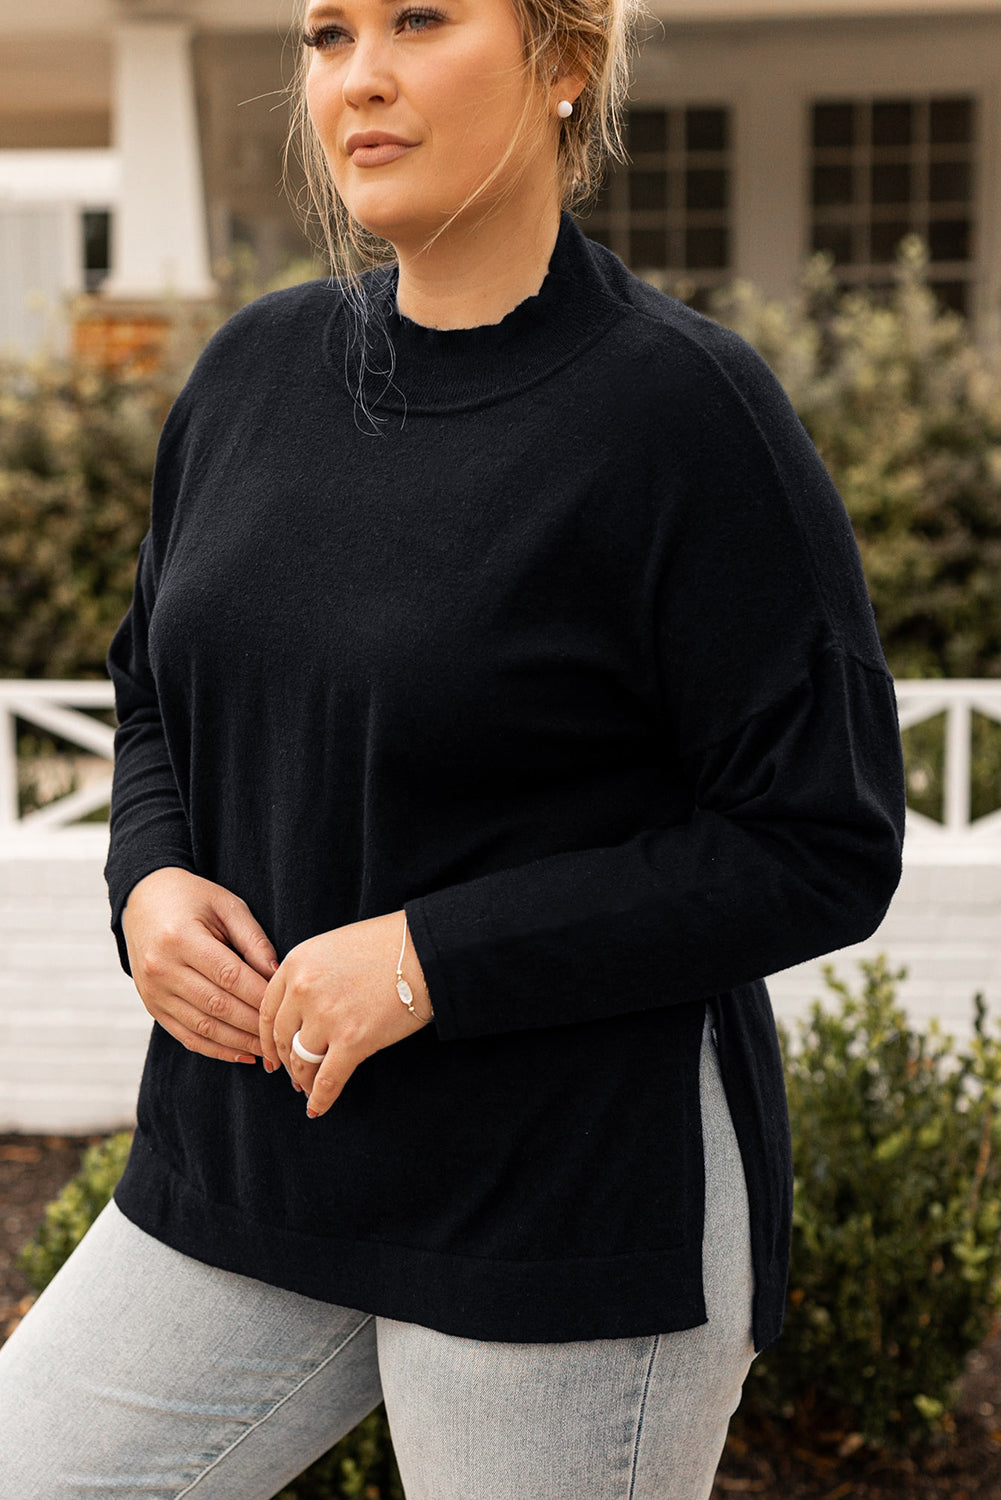 Schwarzer, lockerer Pullover mit seitlichen Schlitzen und Stehkragen in Übergröße